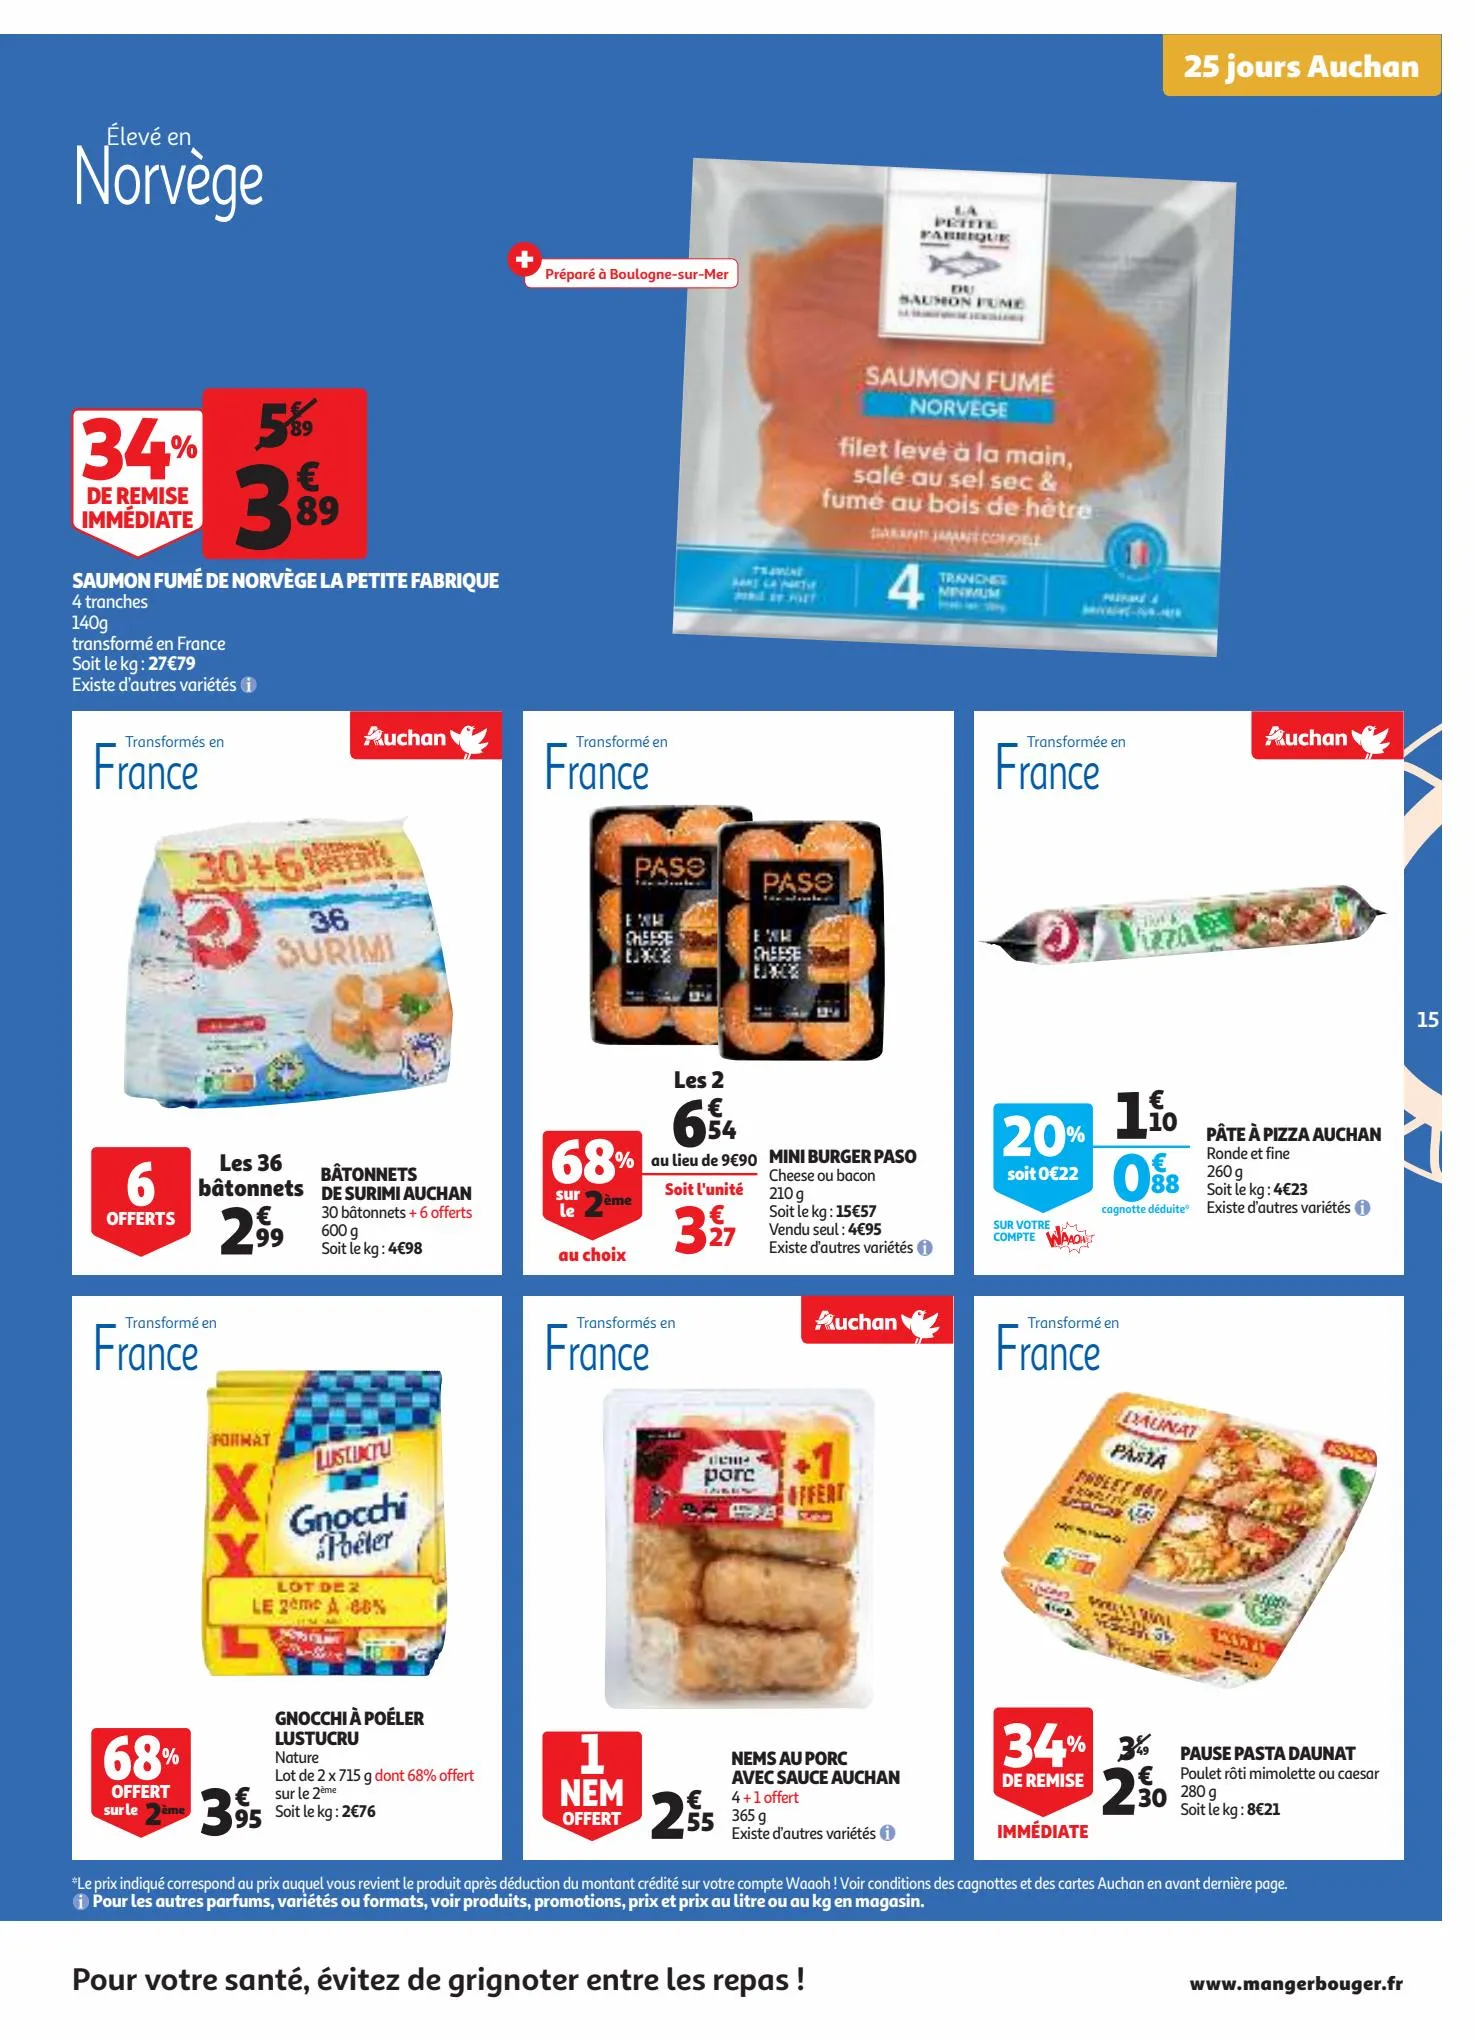 Catalogue 25 jours Auchan, page 00015